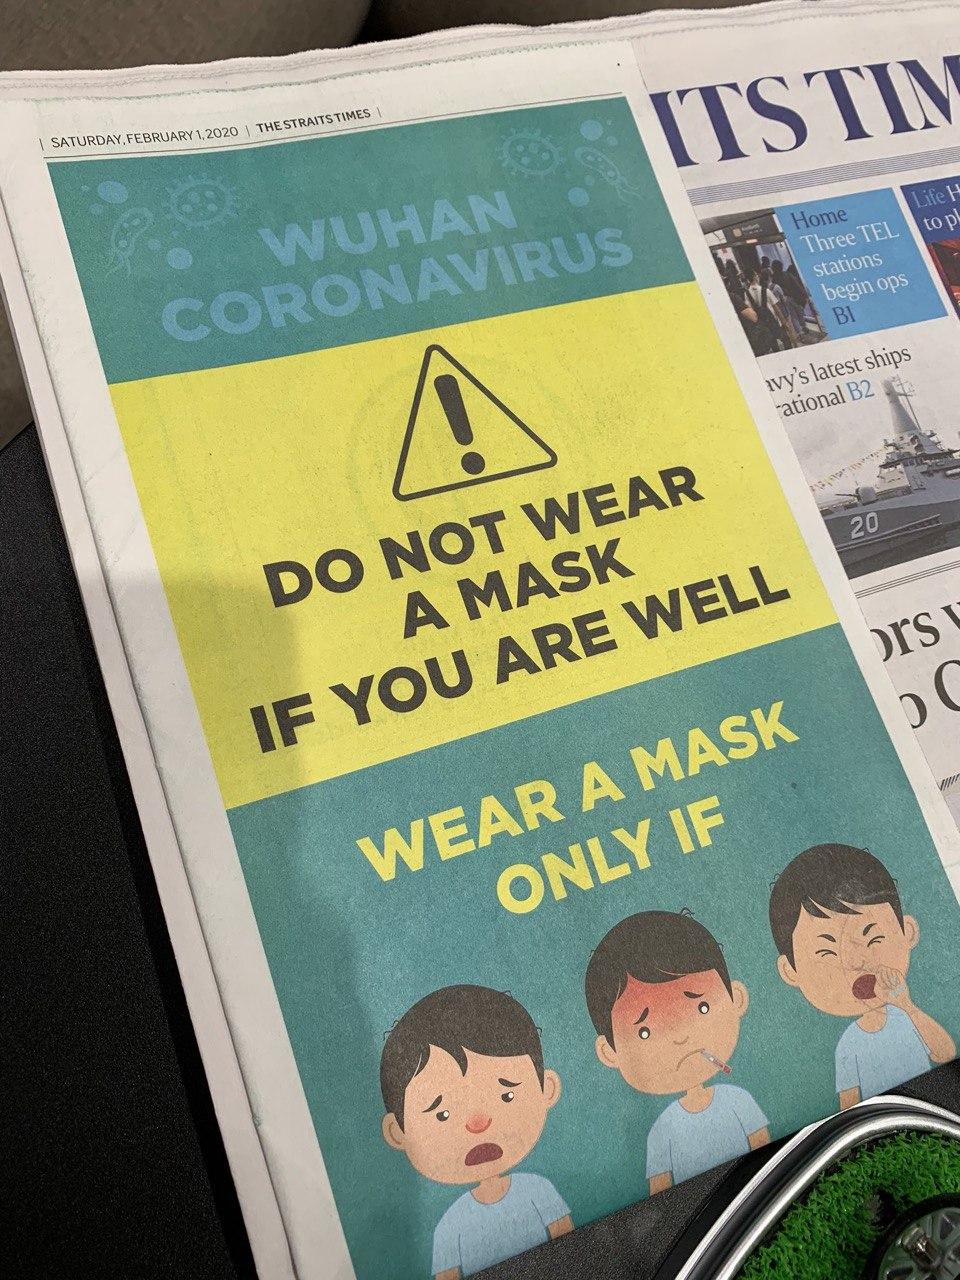 mask wearing advisory